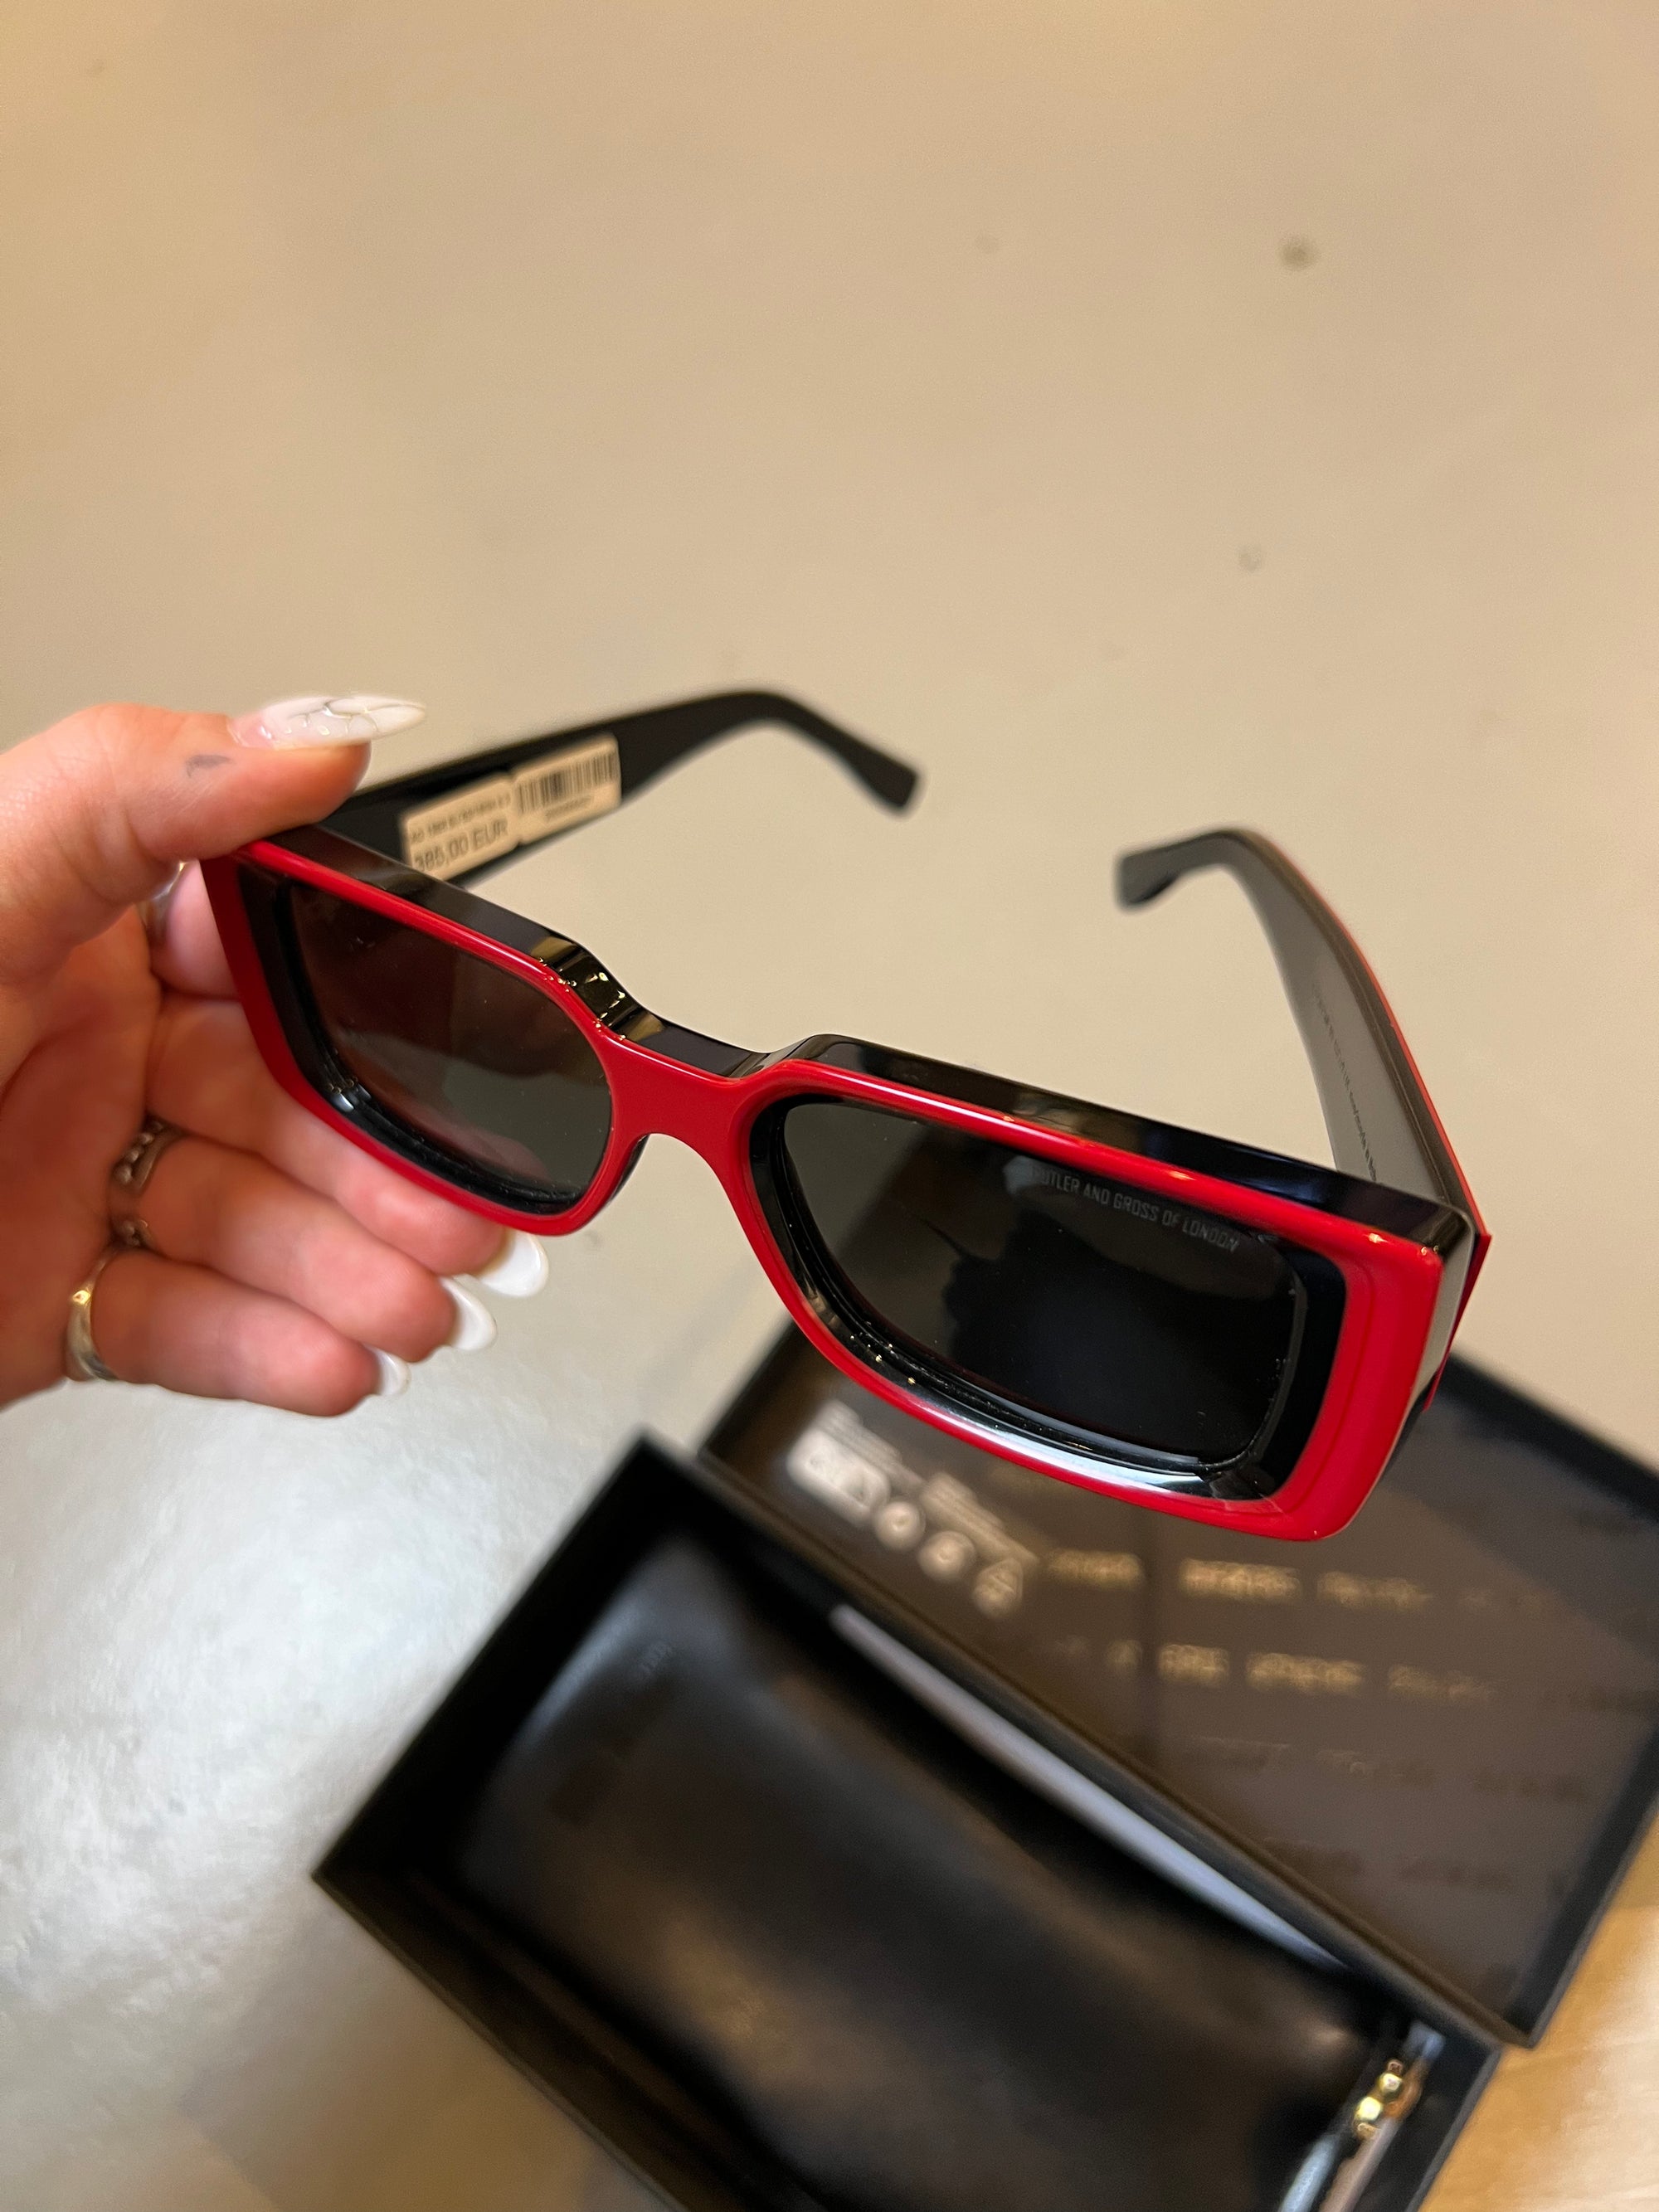 Produktbild der Vintage Red Cutler Sonnenbrille mit großen Gläsern von Oben.